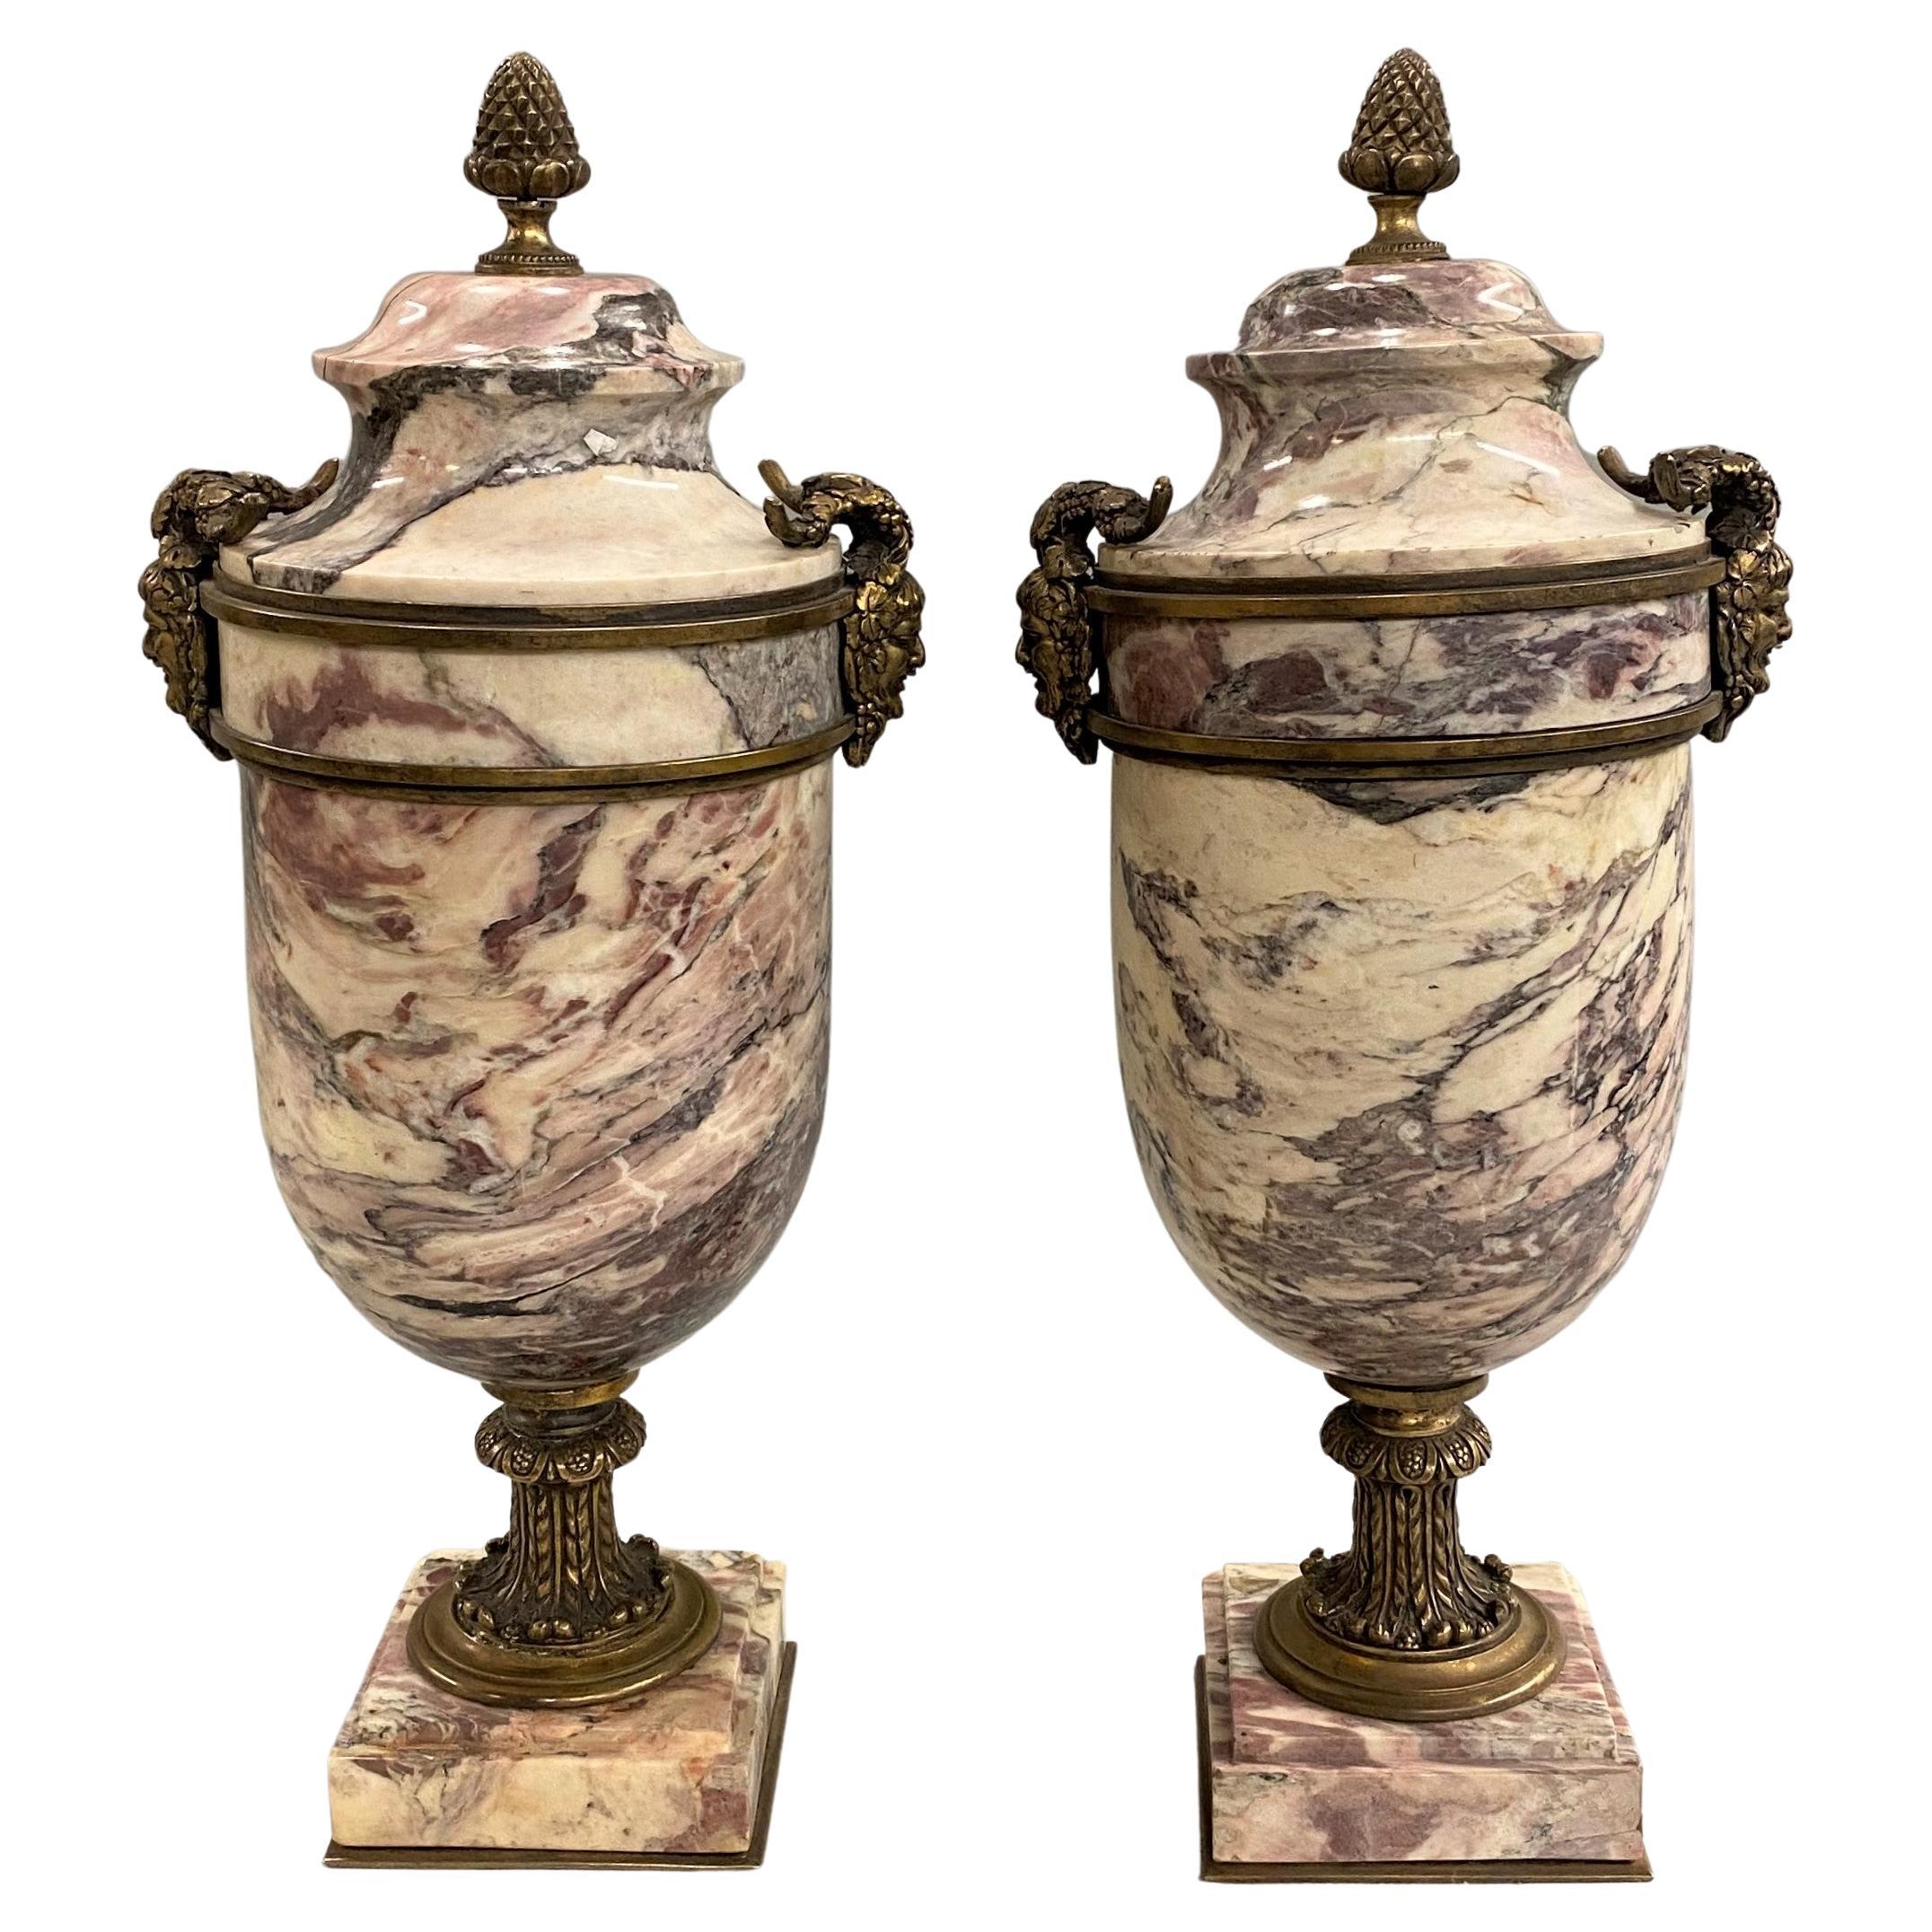 Paire d'urnes en marbre de style néoclassique italien montées sur bronze doré